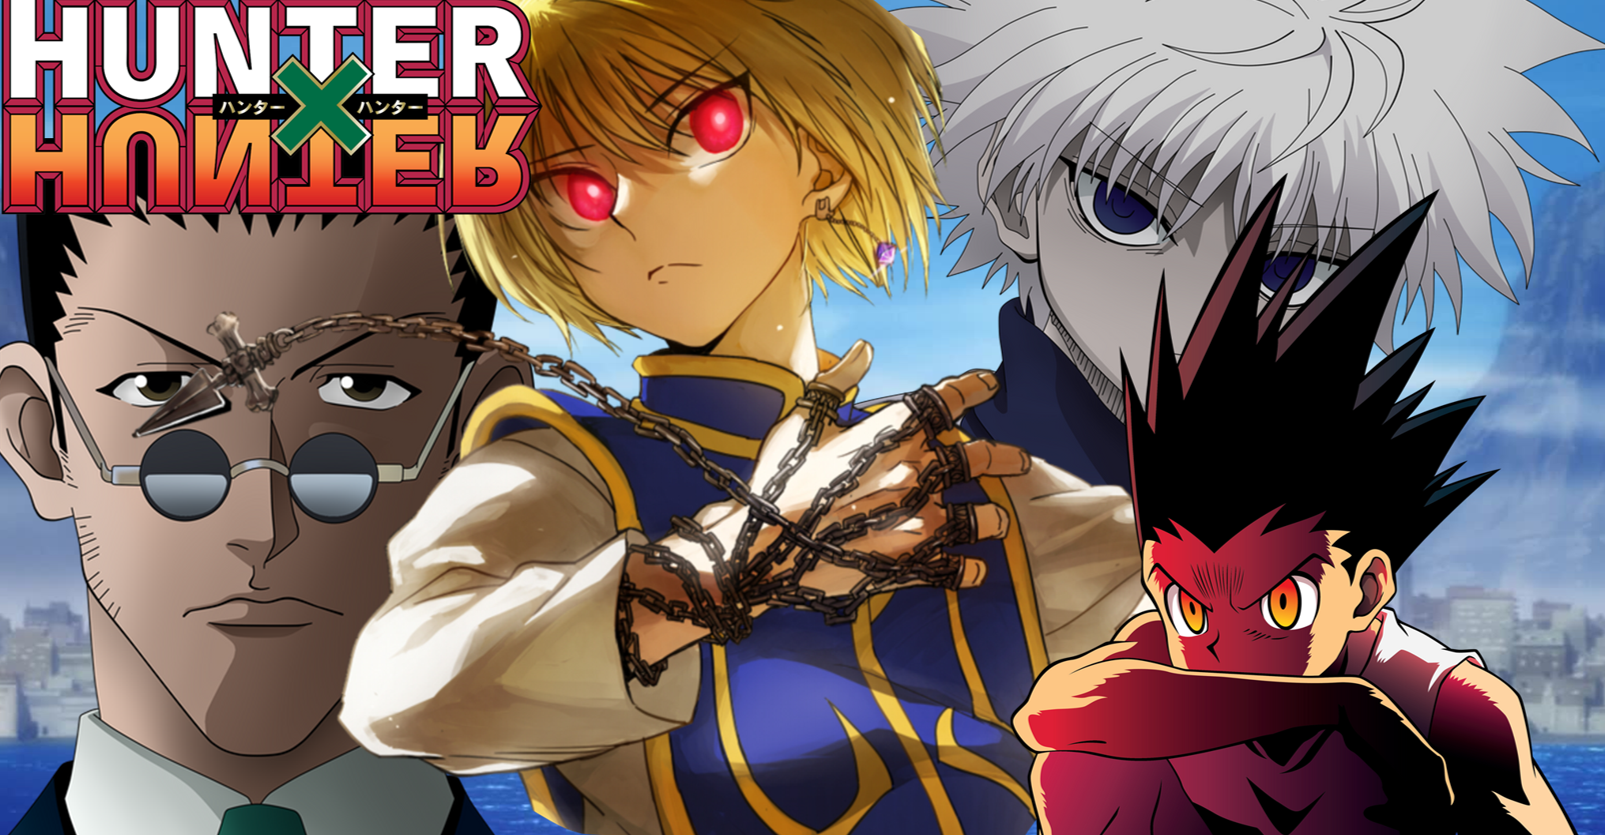 Hunter x Hunter Main Characters + Abilities